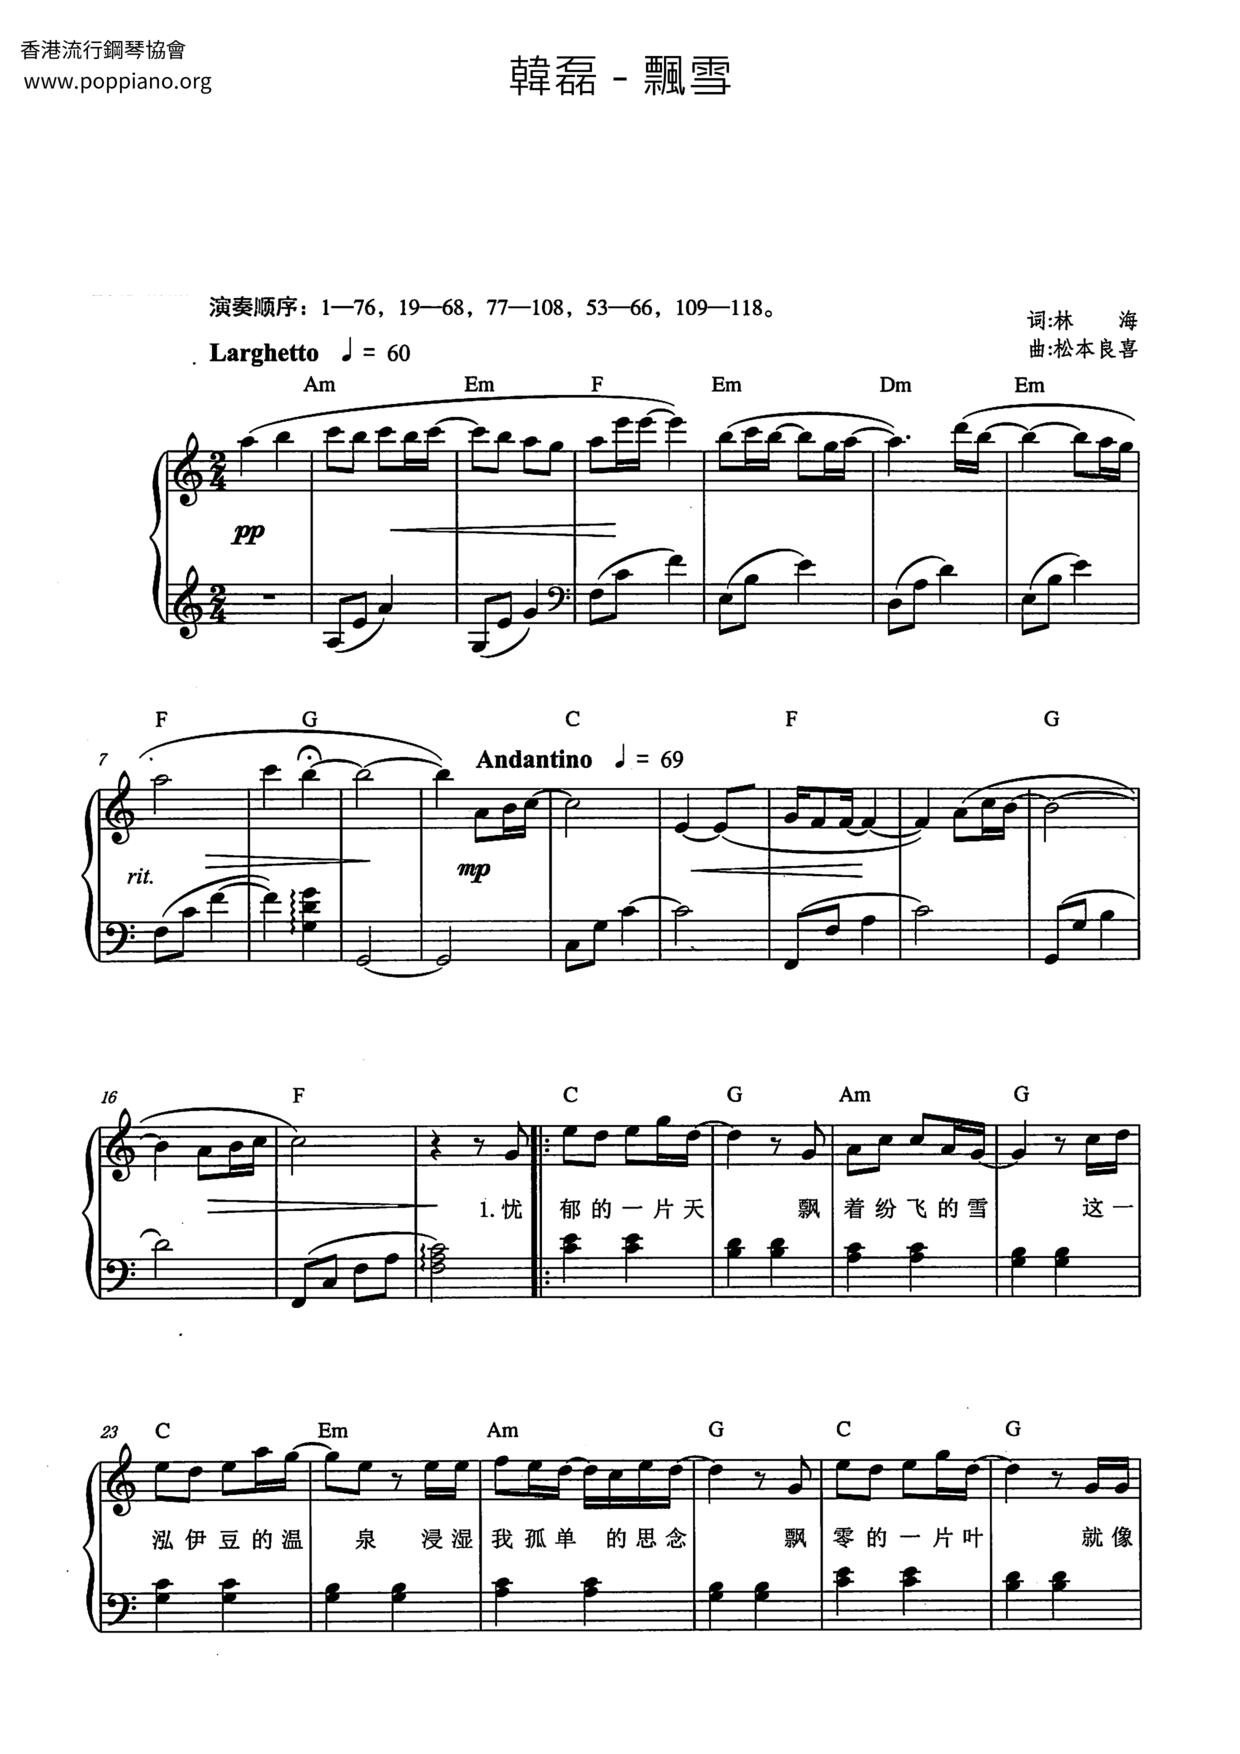 Piao Xue Score